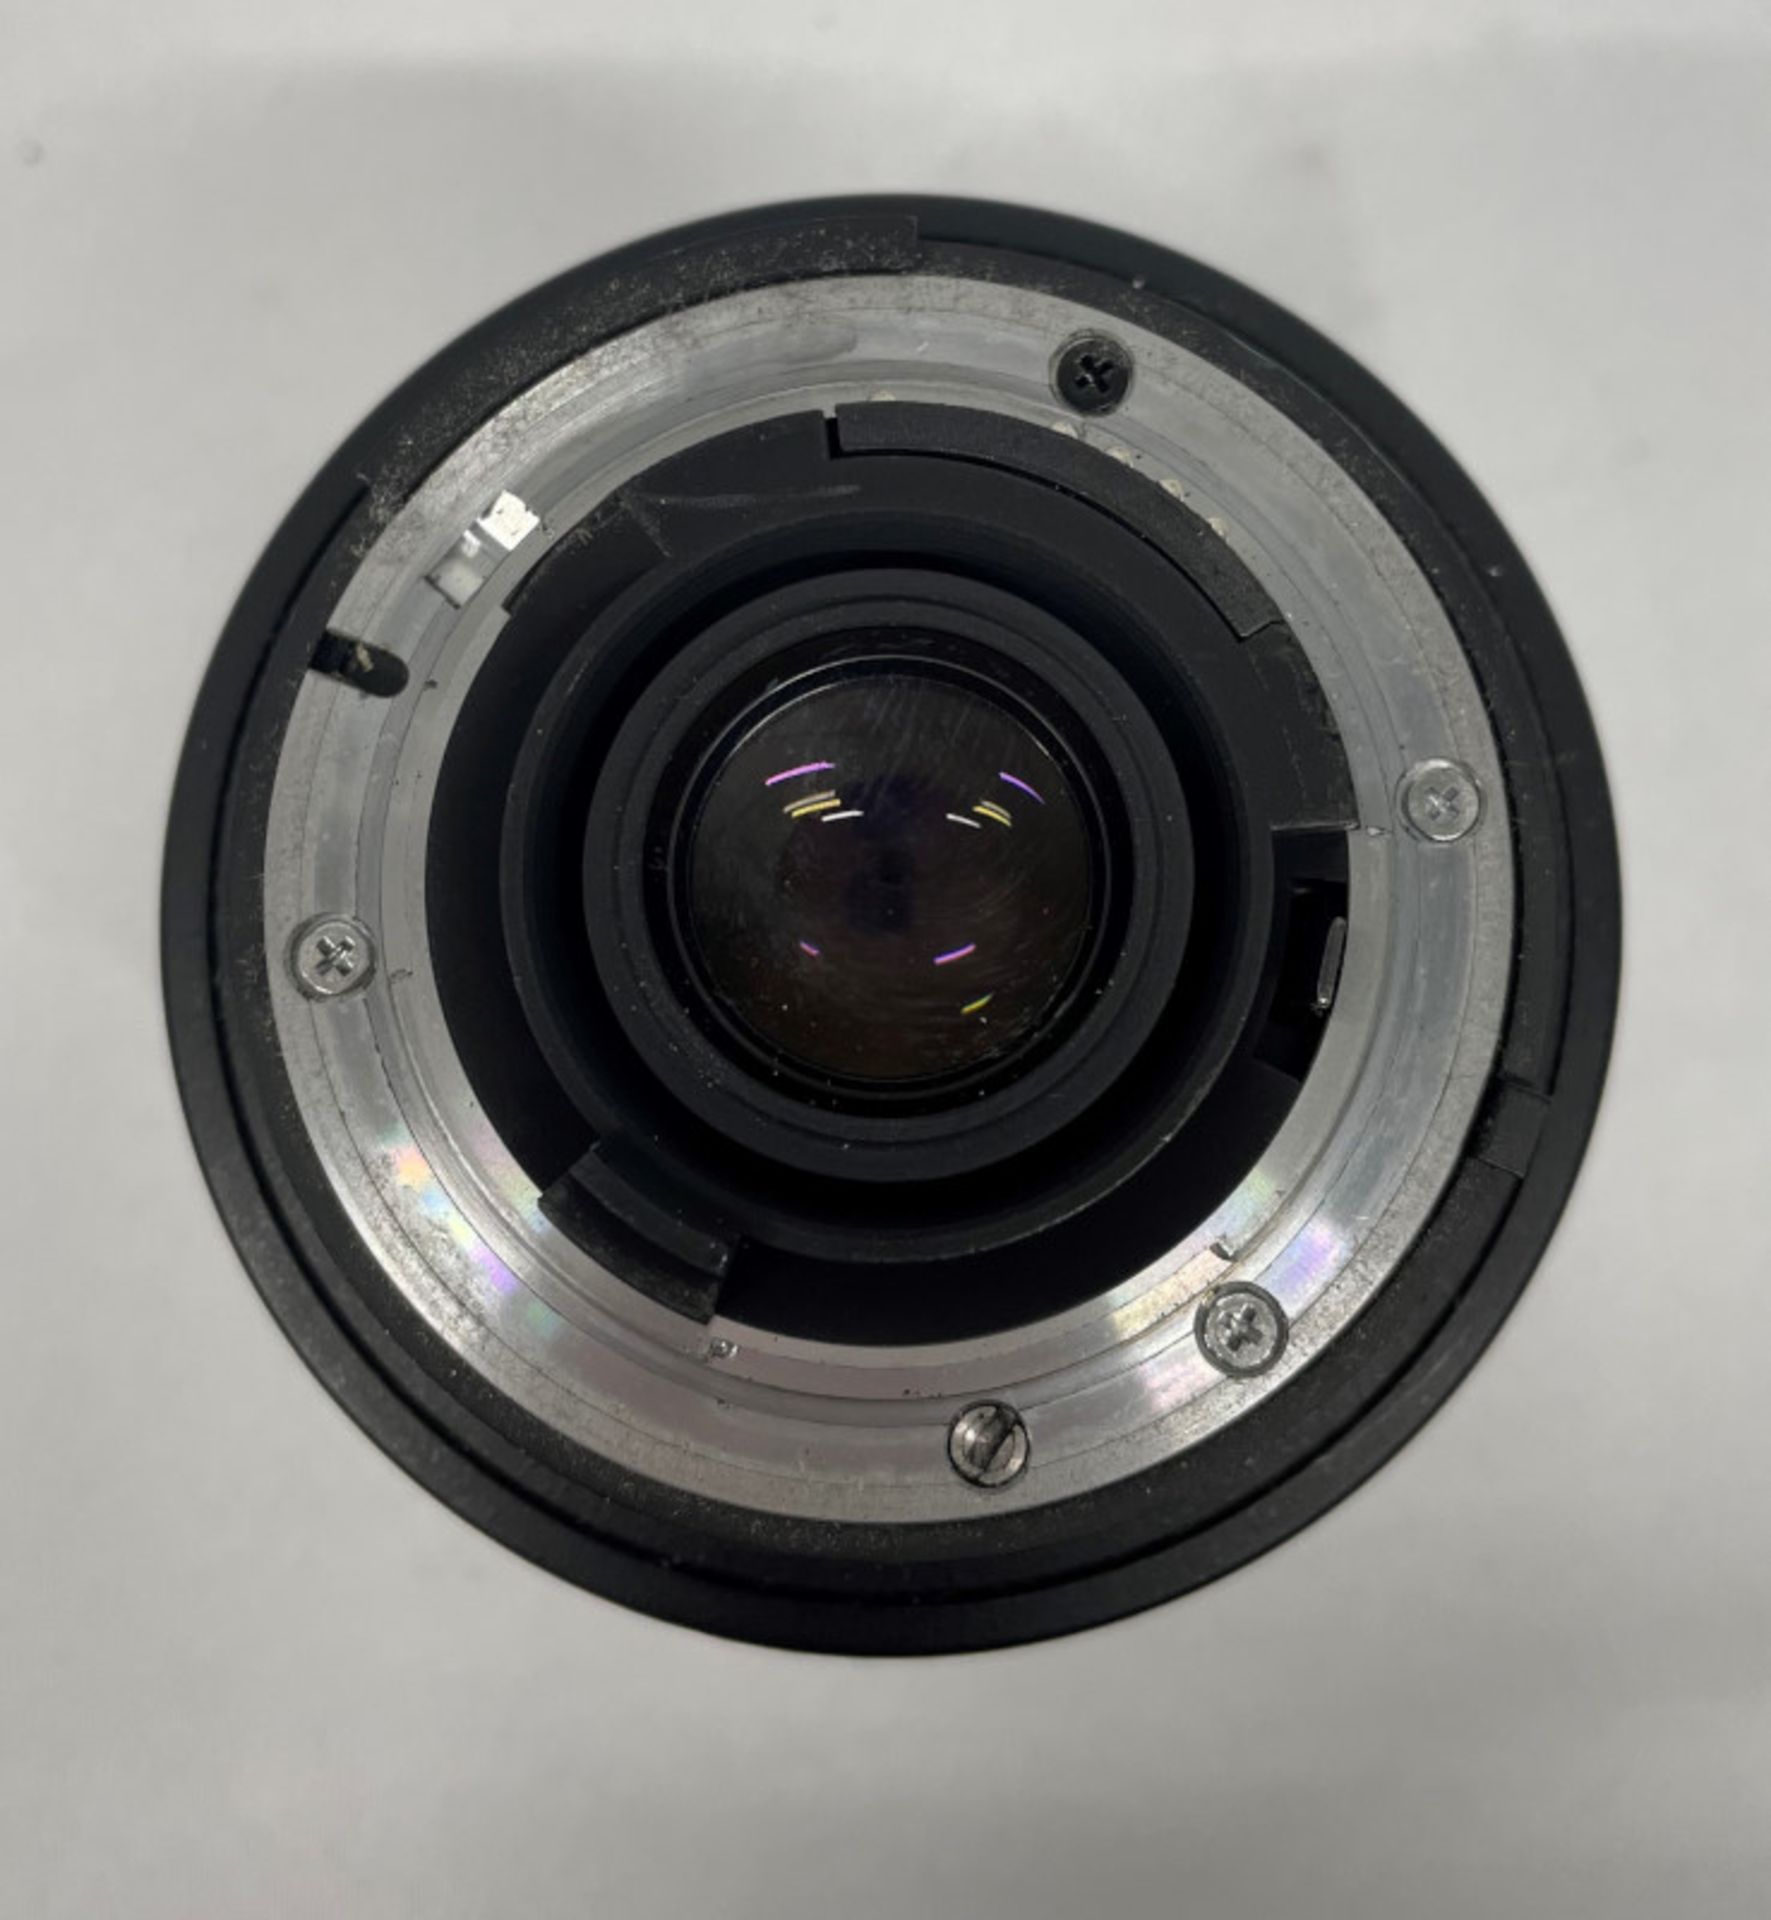 Nikon AF Nikkor 24-85mm - 1:2.8-4 D Lens - Serial No. 294654 - Image 5 of 7